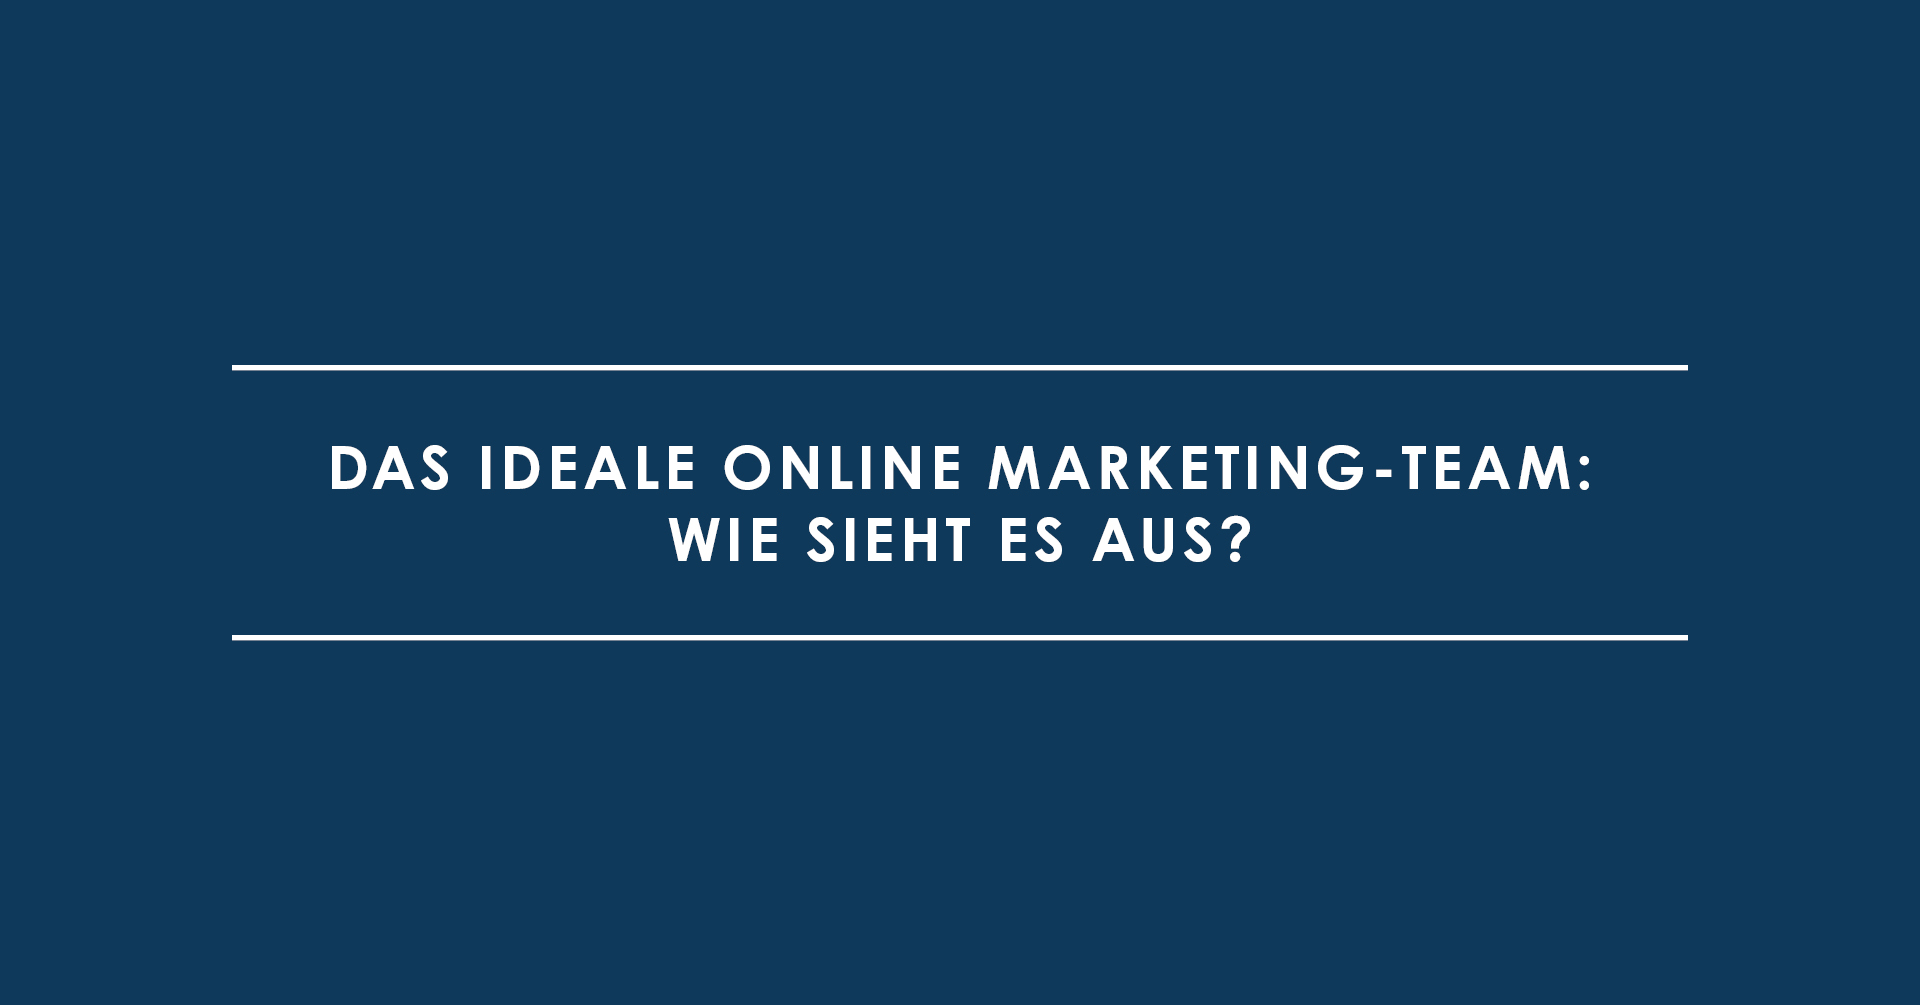 Das ideale Online Marketing-Team: Wie sieht es aus?